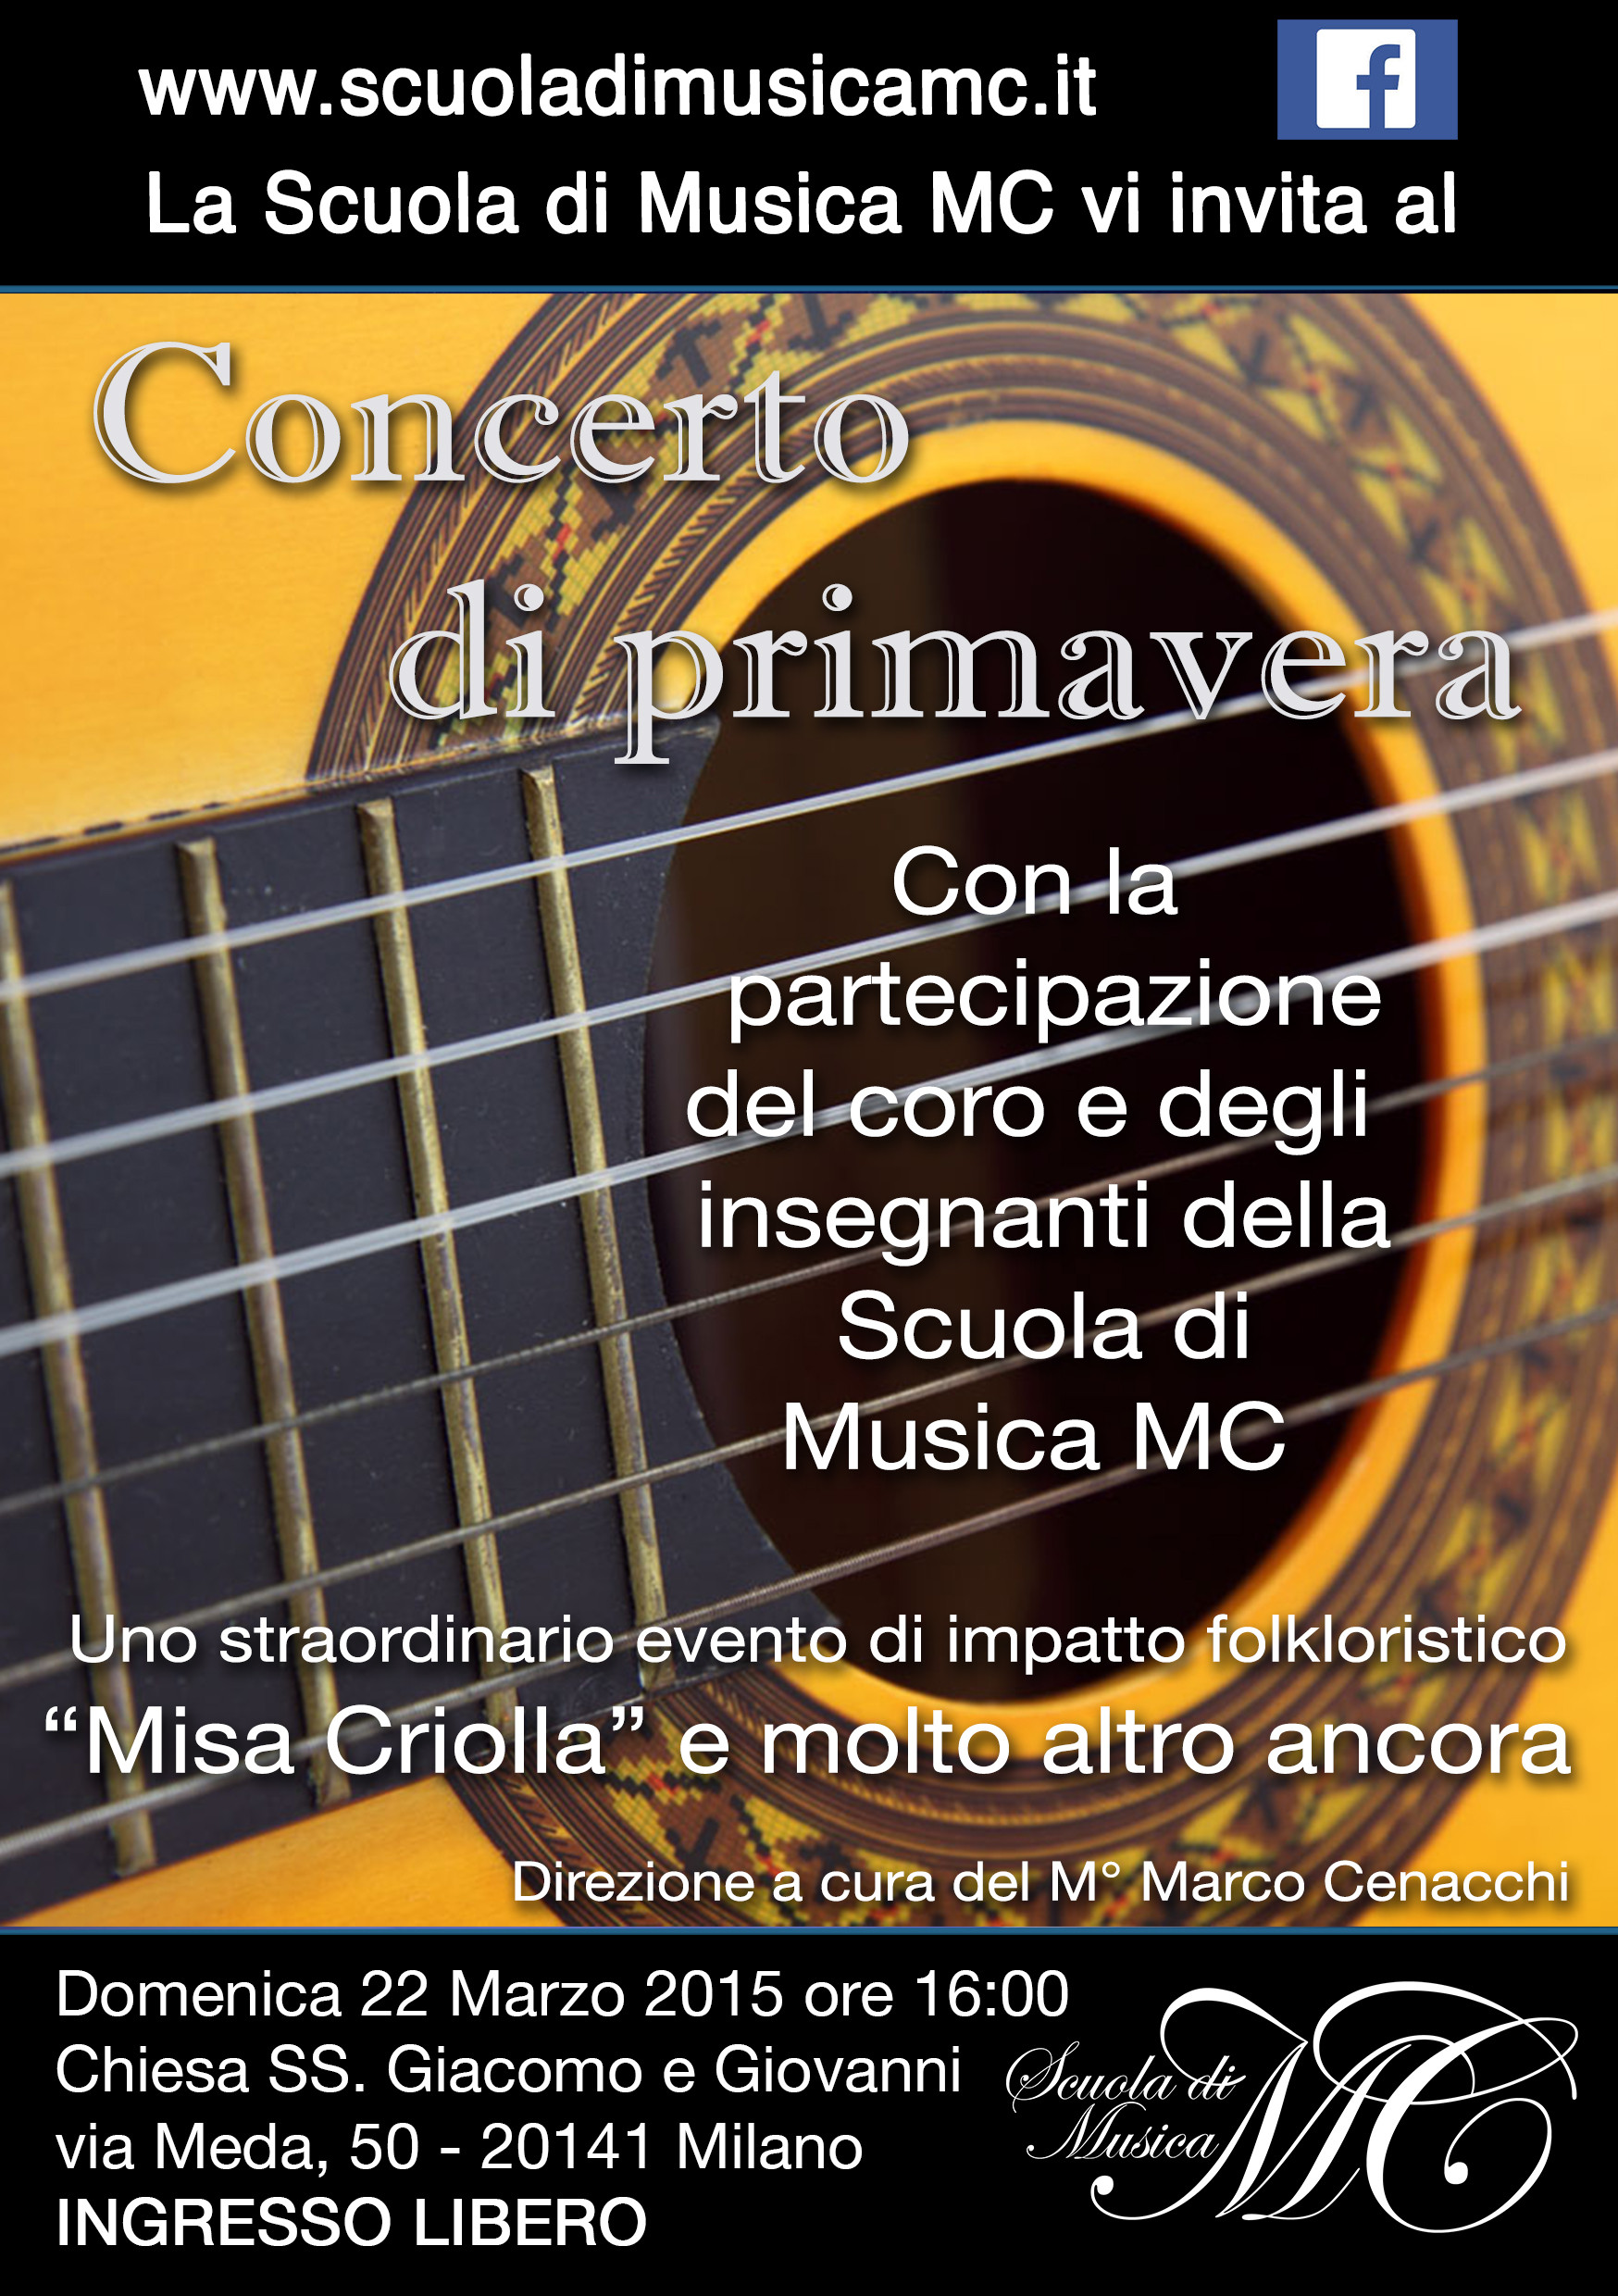 concerto-primavera-2015-scuola-musica-milano-mc